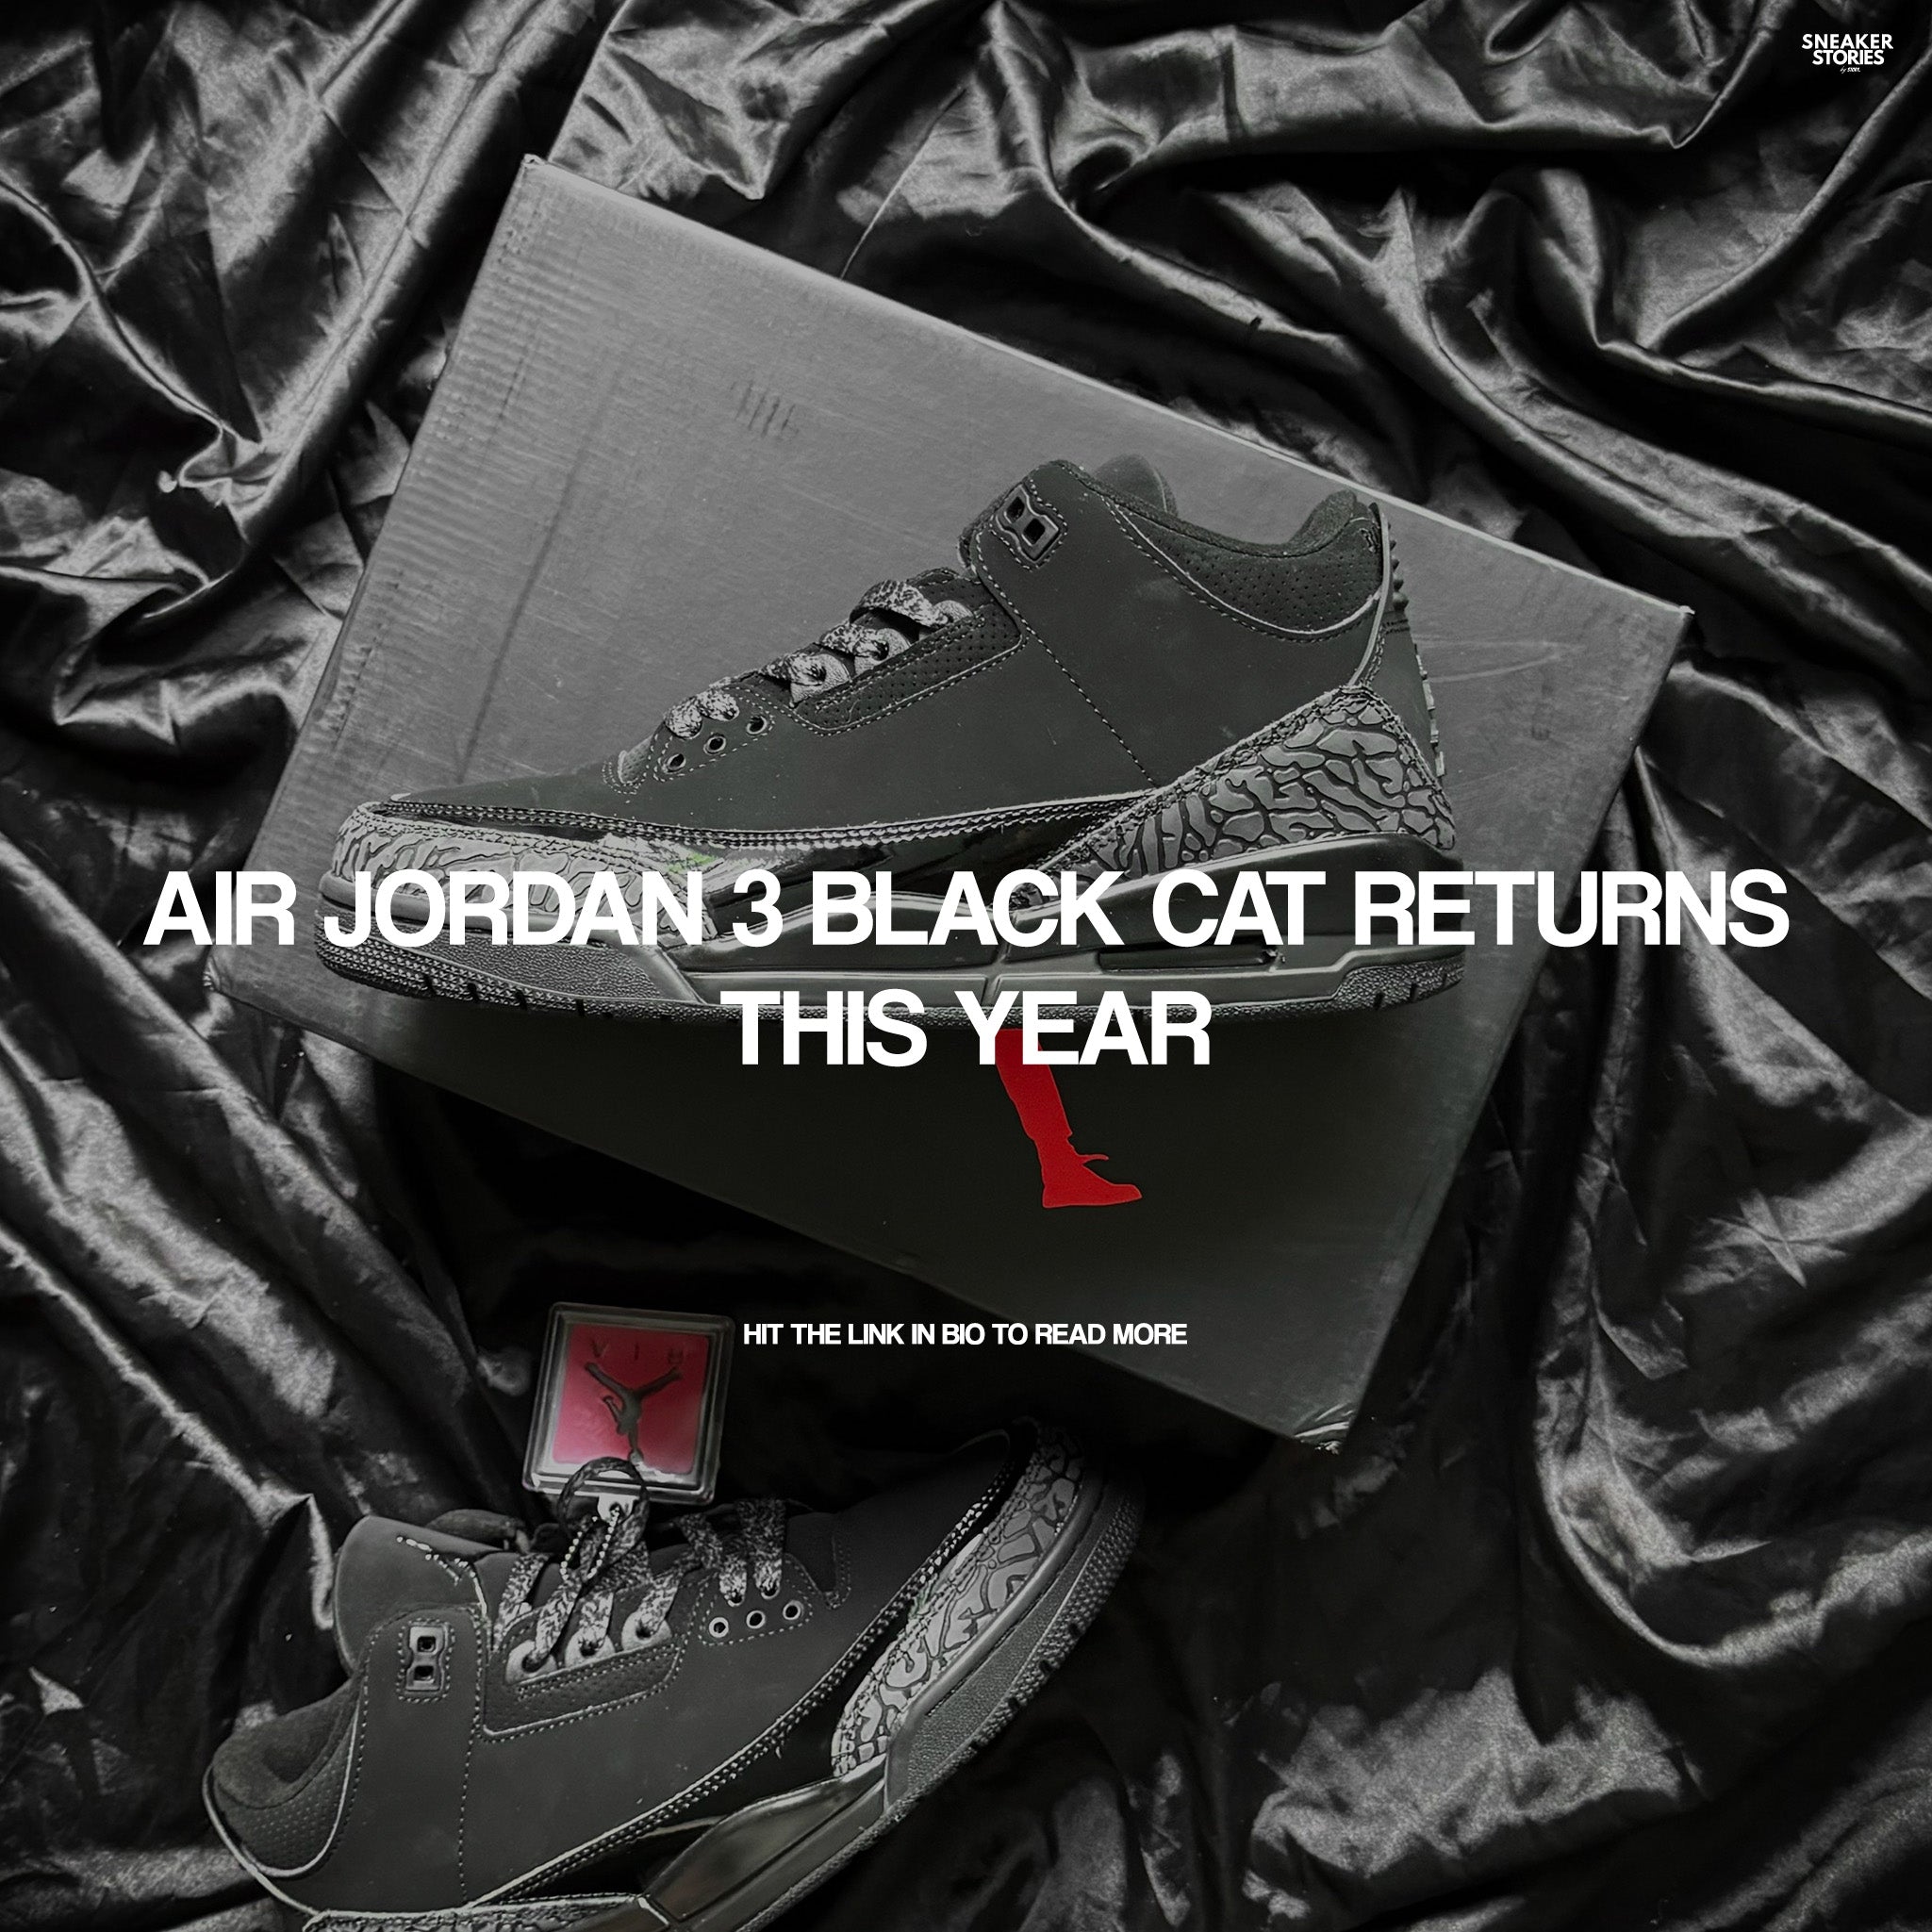 Air Jordan 3 Black Cat returns this year